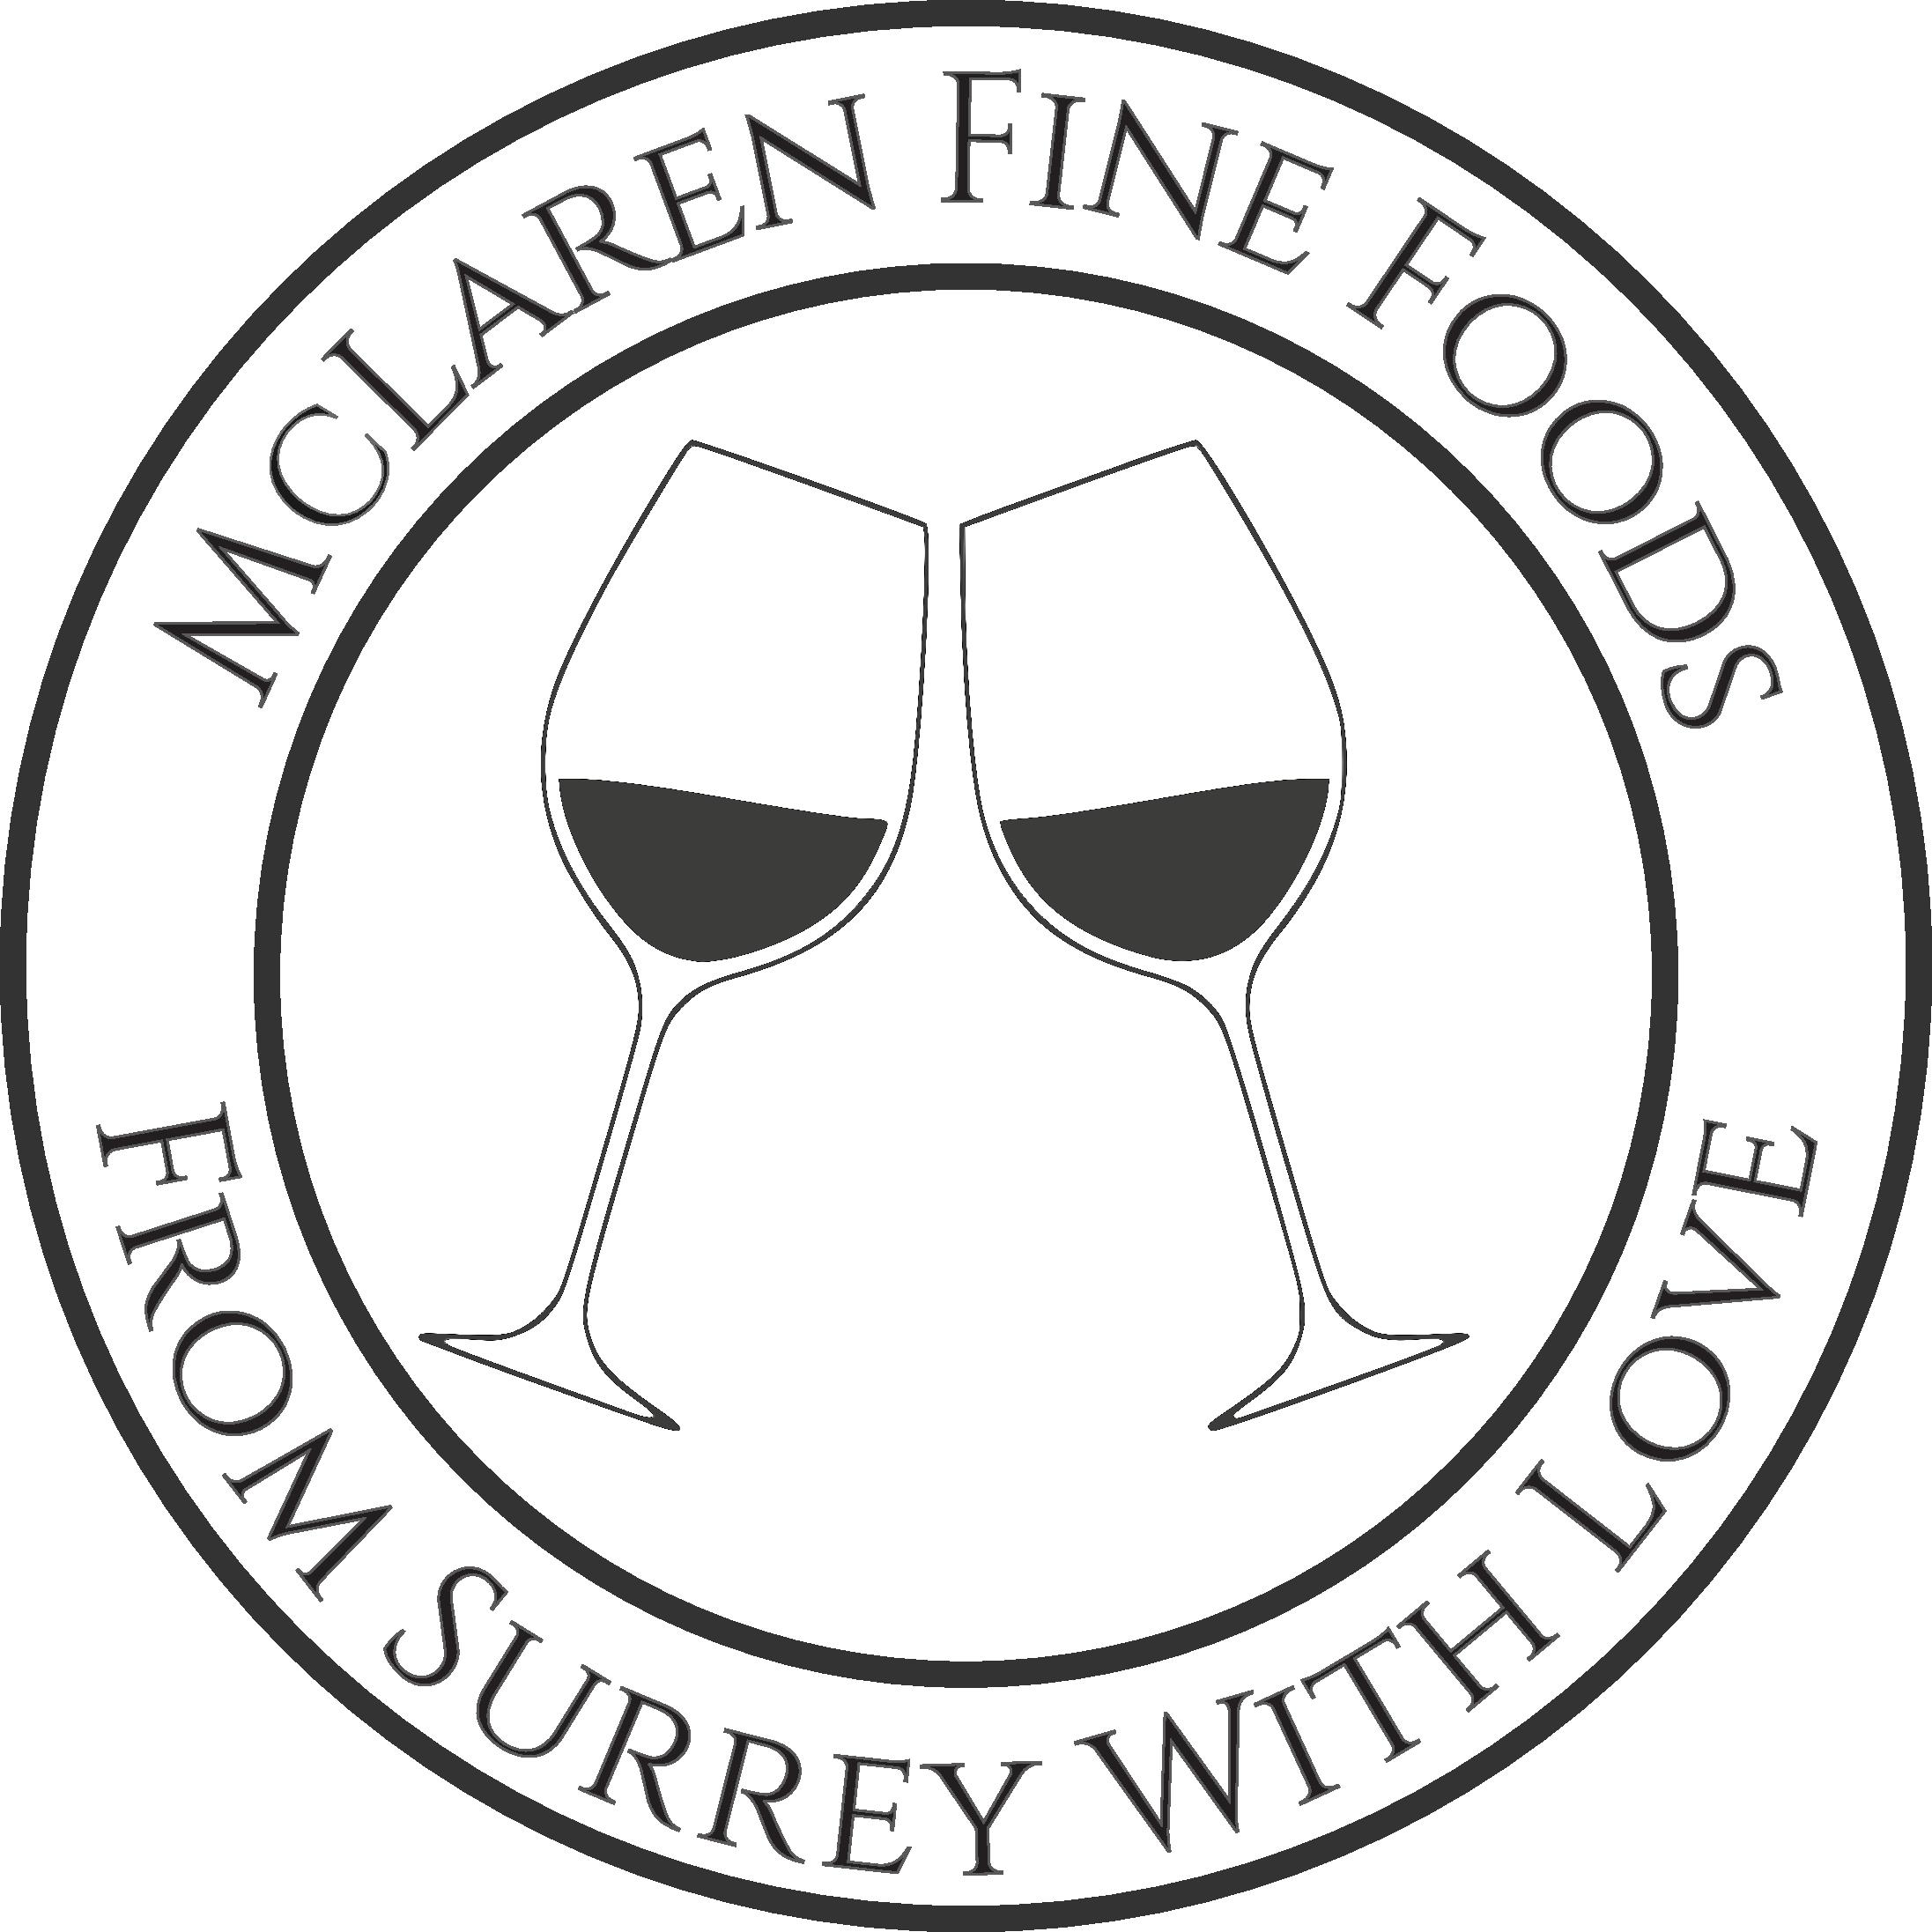 McLaren Fine Foods in 